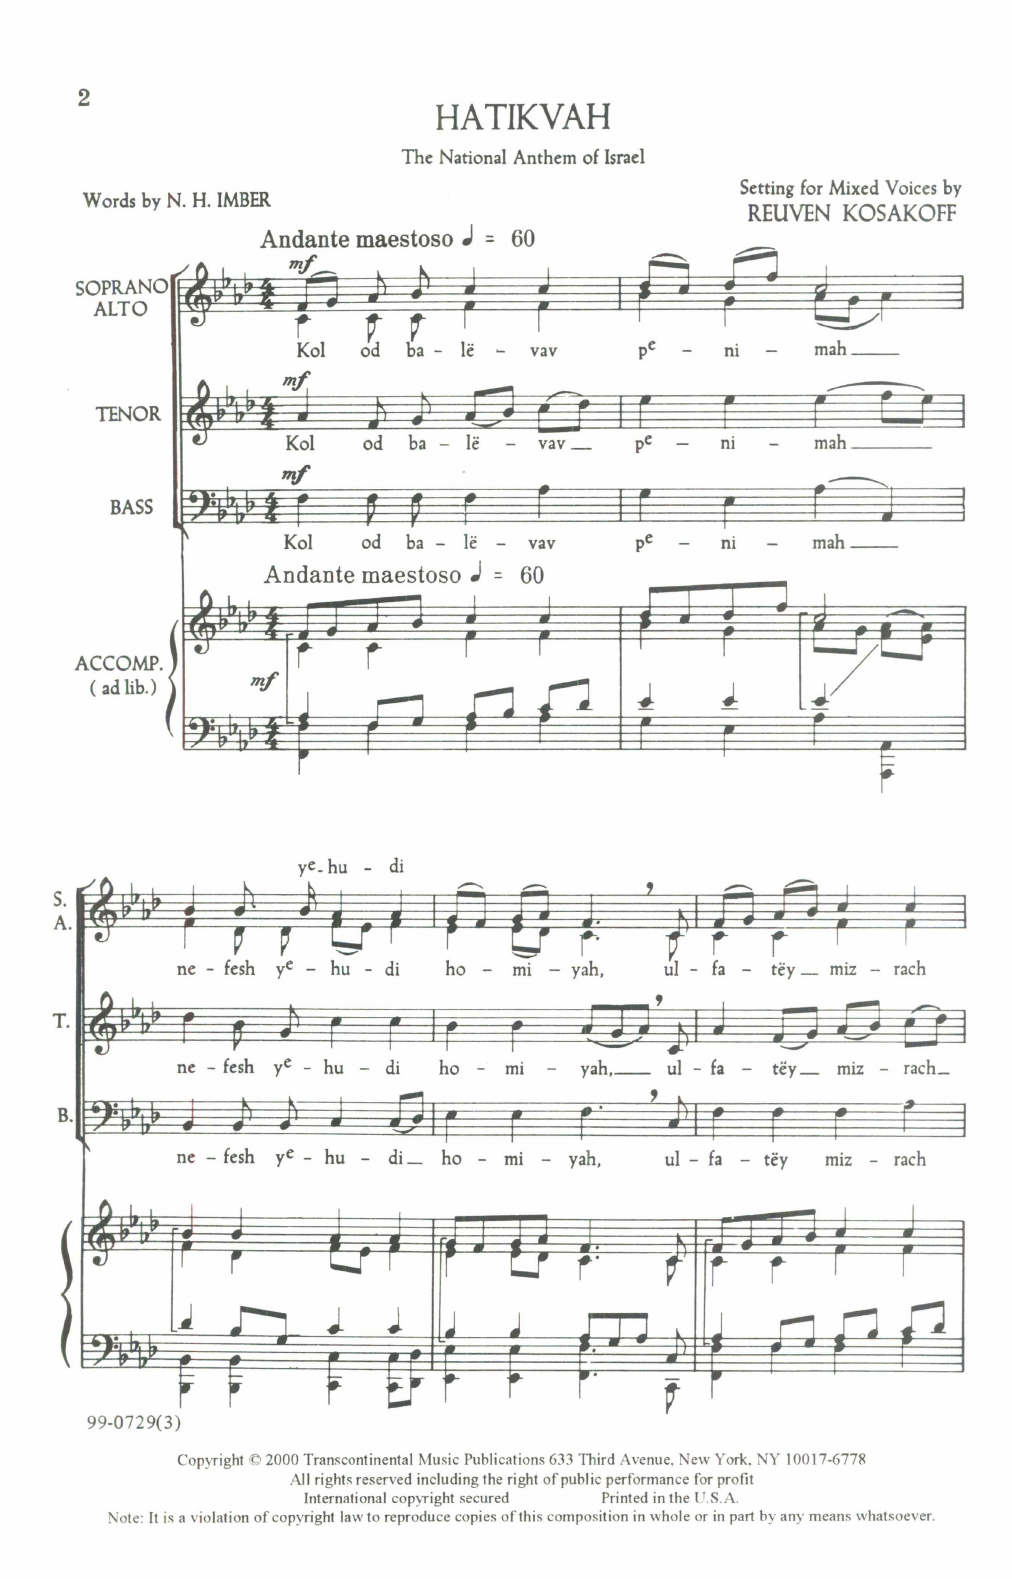 Reuven Kosakoff Hatikvah Sheet Music Notes & Chords for SATB Choir - Download or Print PDF